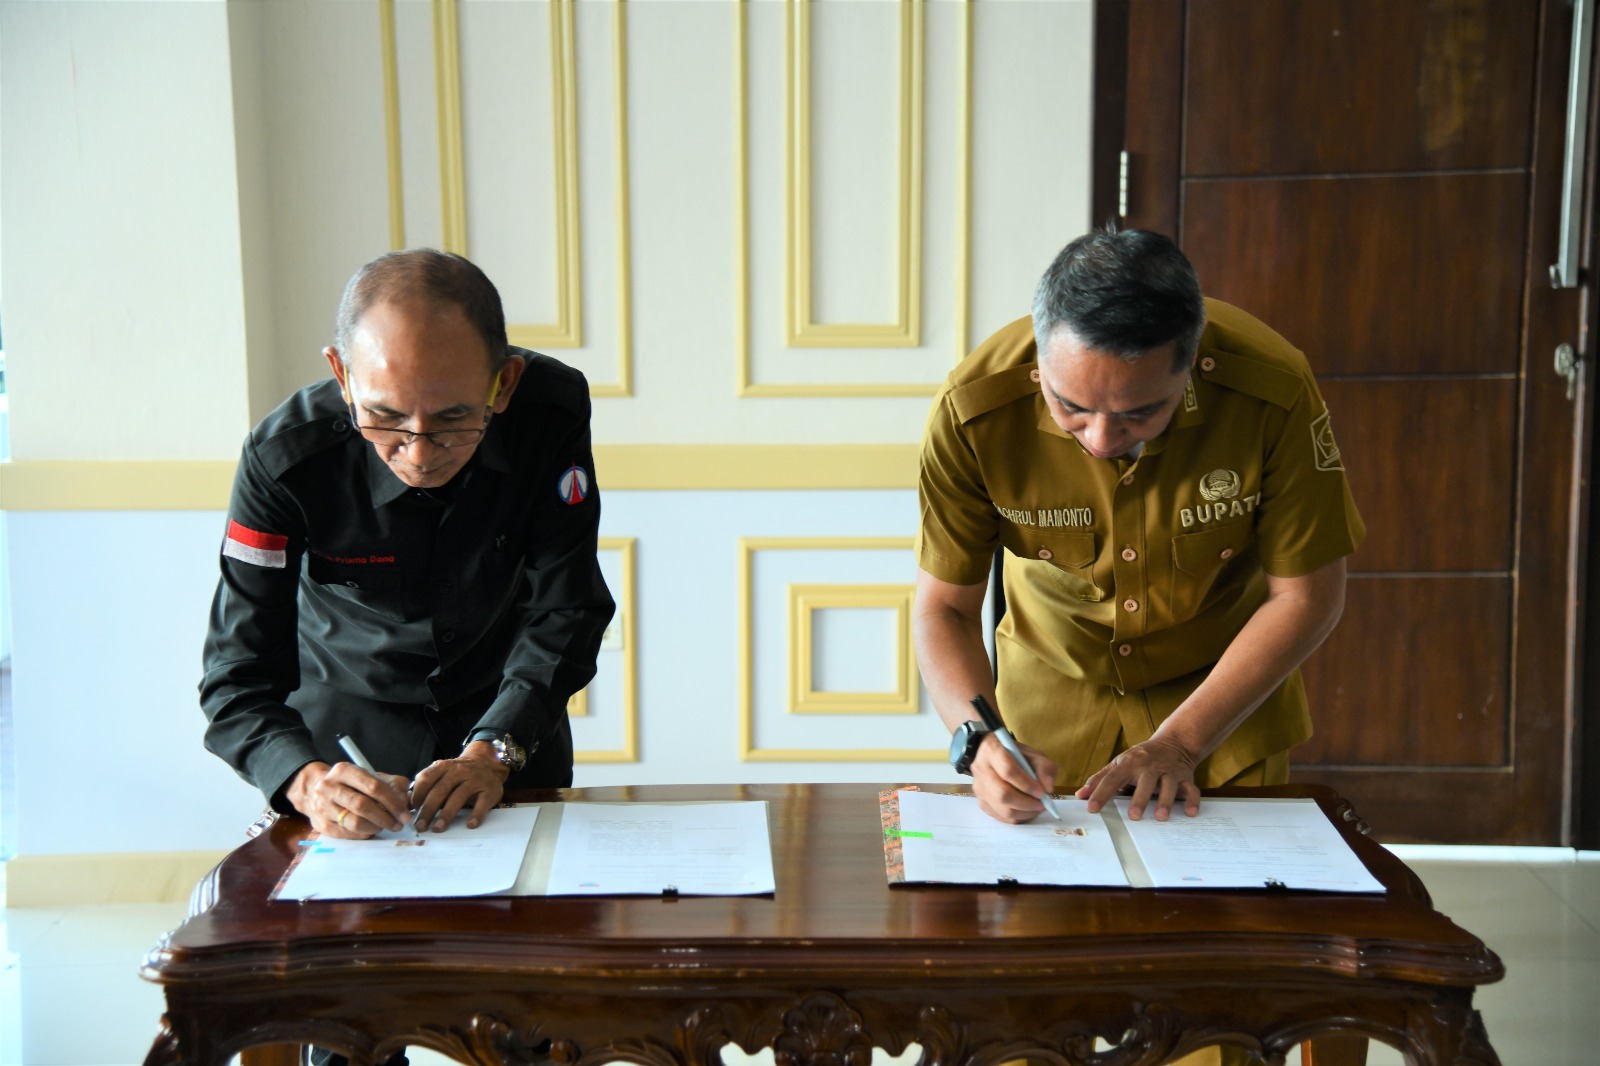 Bupati Boltim Sam Sachrul Mamonto menandatangani MoU dengan PT Bank Prisma Dana terkait pembiayaan wisata ke Jepang, di Ruang Kerja Kantor Bupati Boltim, Selasa 14 Maret 2023, Foto : Dinas Kominfo Boltim